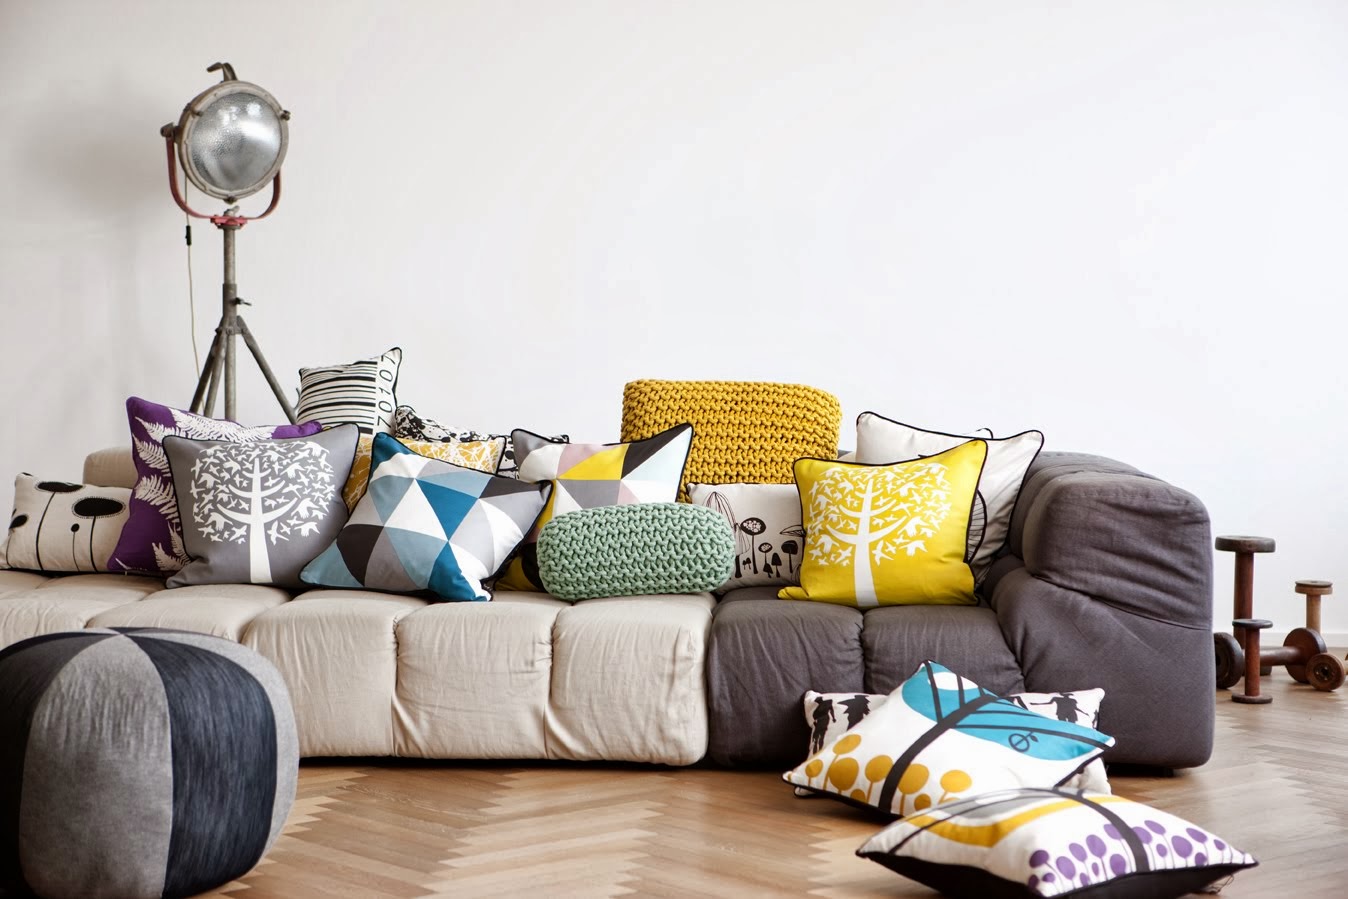 Фото дивана с подушками. Цветные подушки в интерьере. Яркие декоративные подушки в интерьере. Диван с яркими подушками. Сервц диван с декоративными подушками.